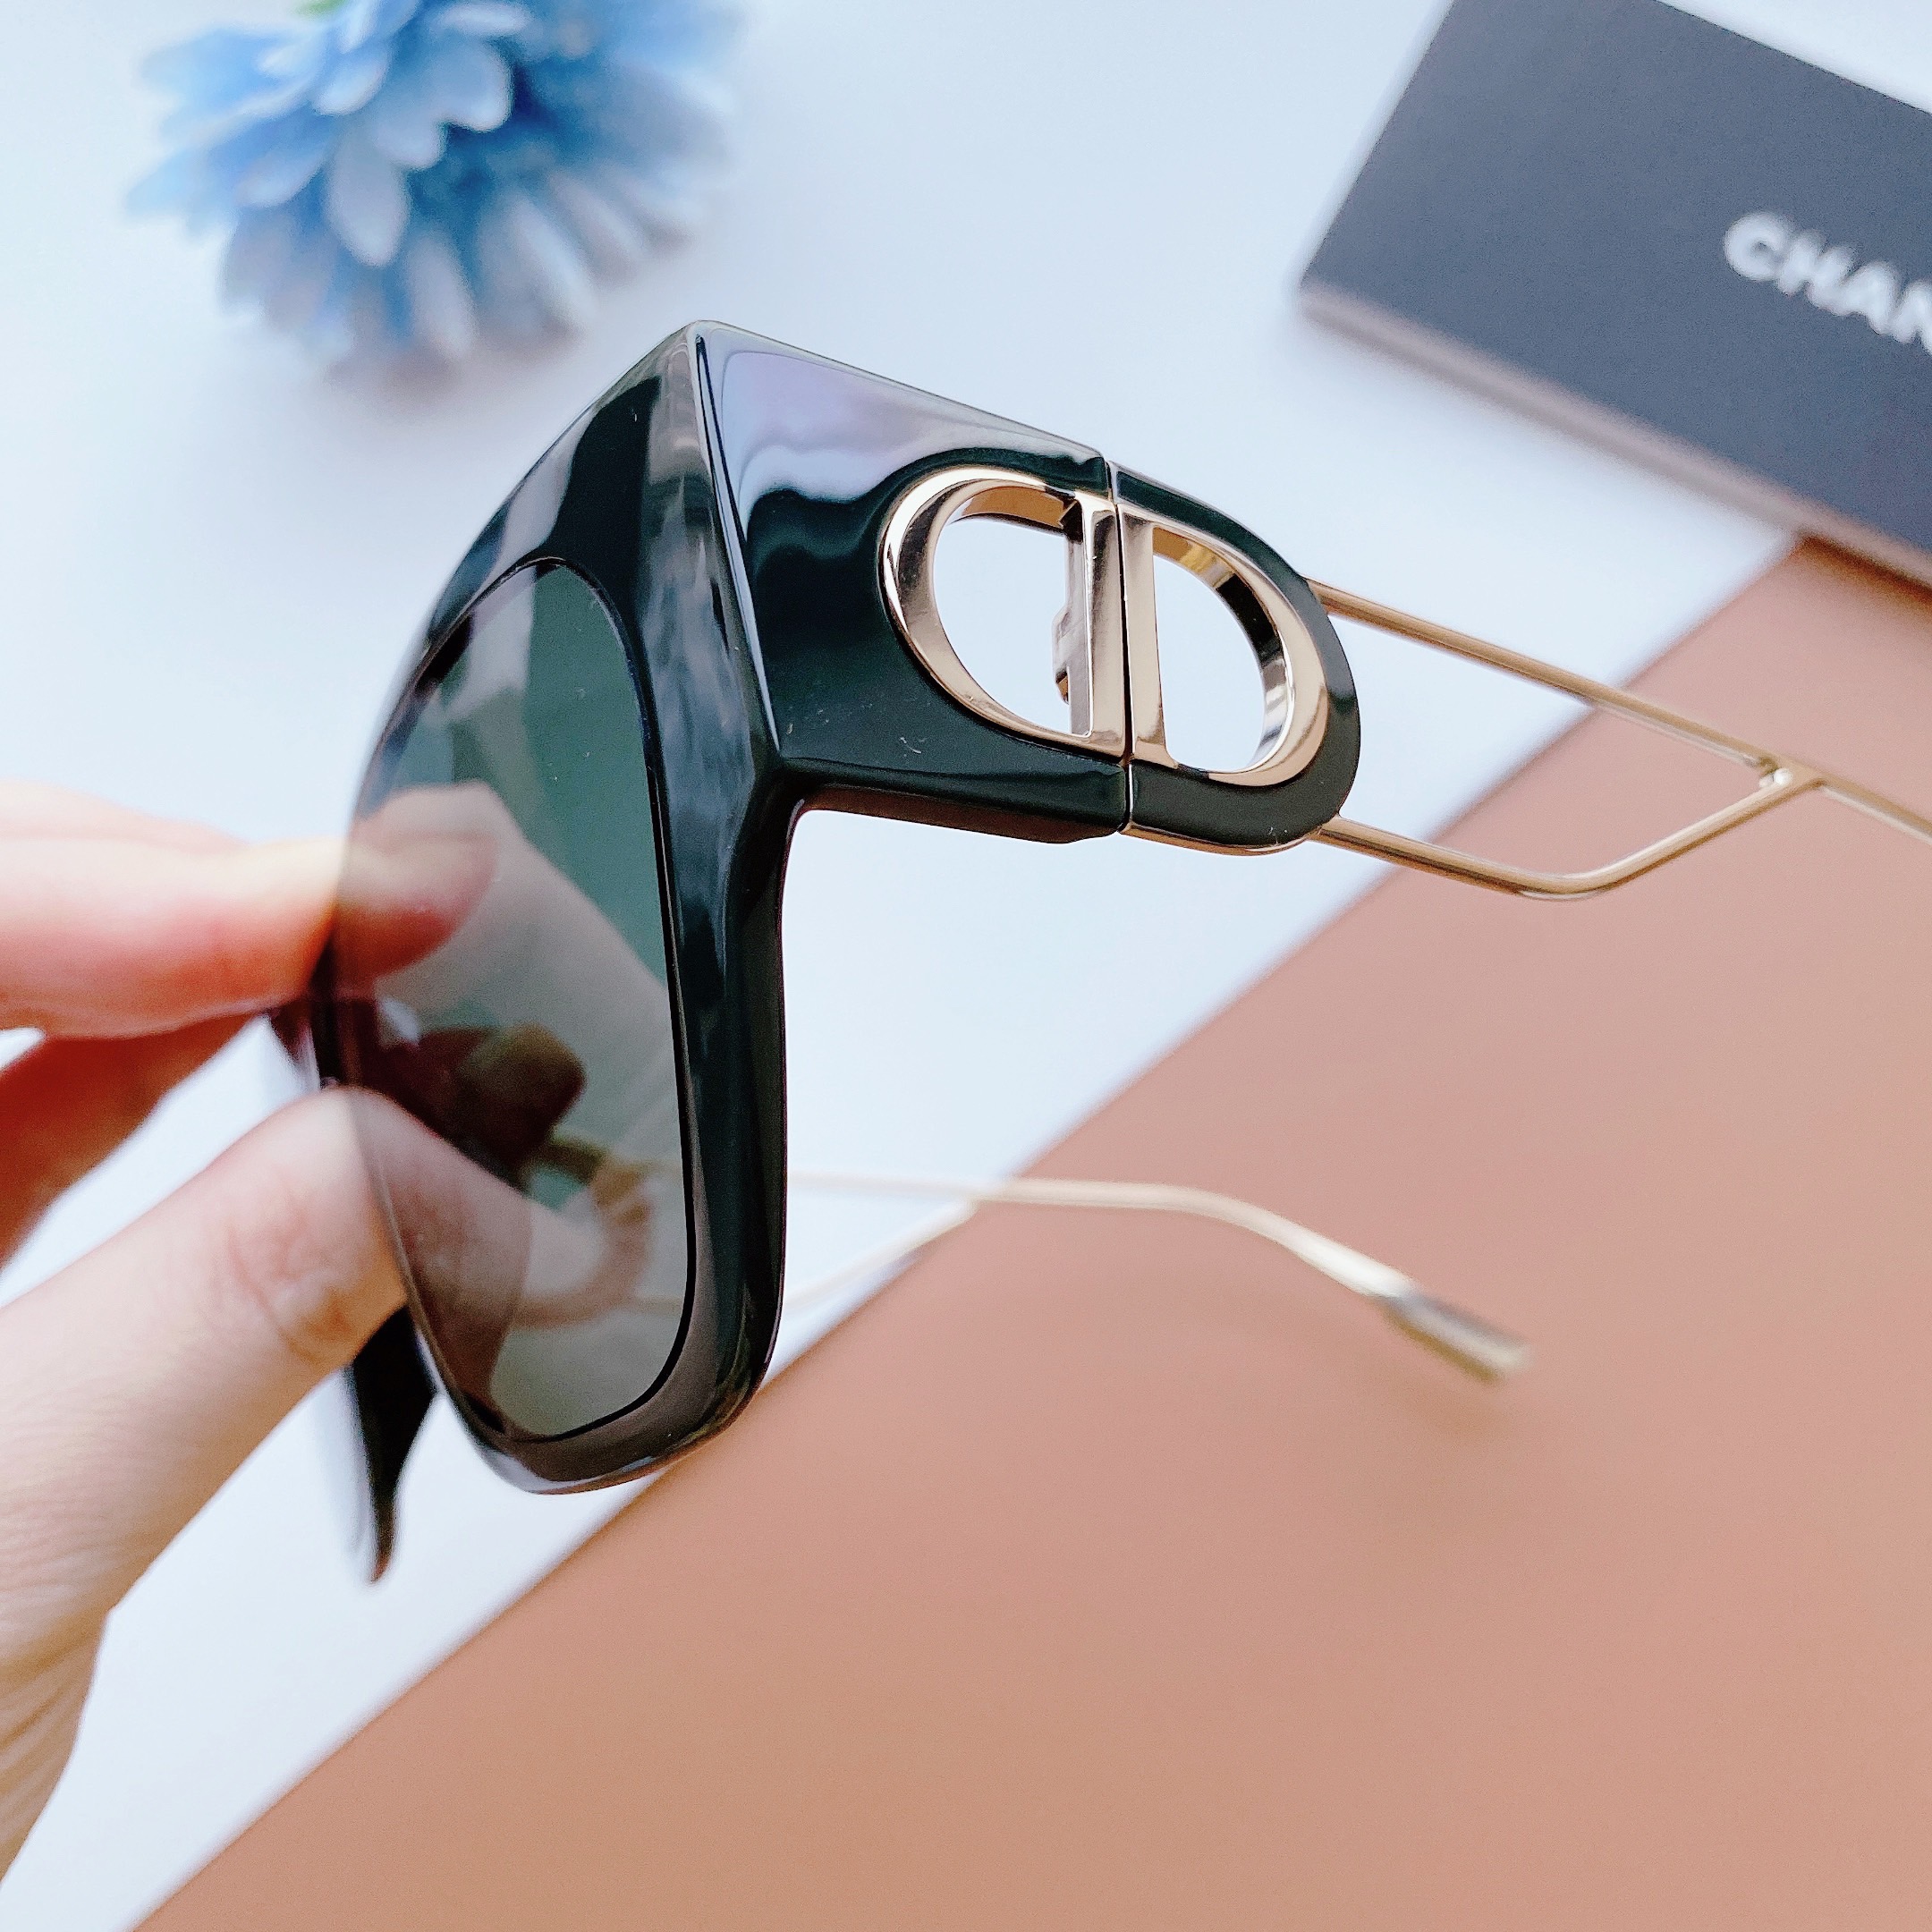 Cách phân biệt mắt kính Dior thật và giả hữu ích nhất